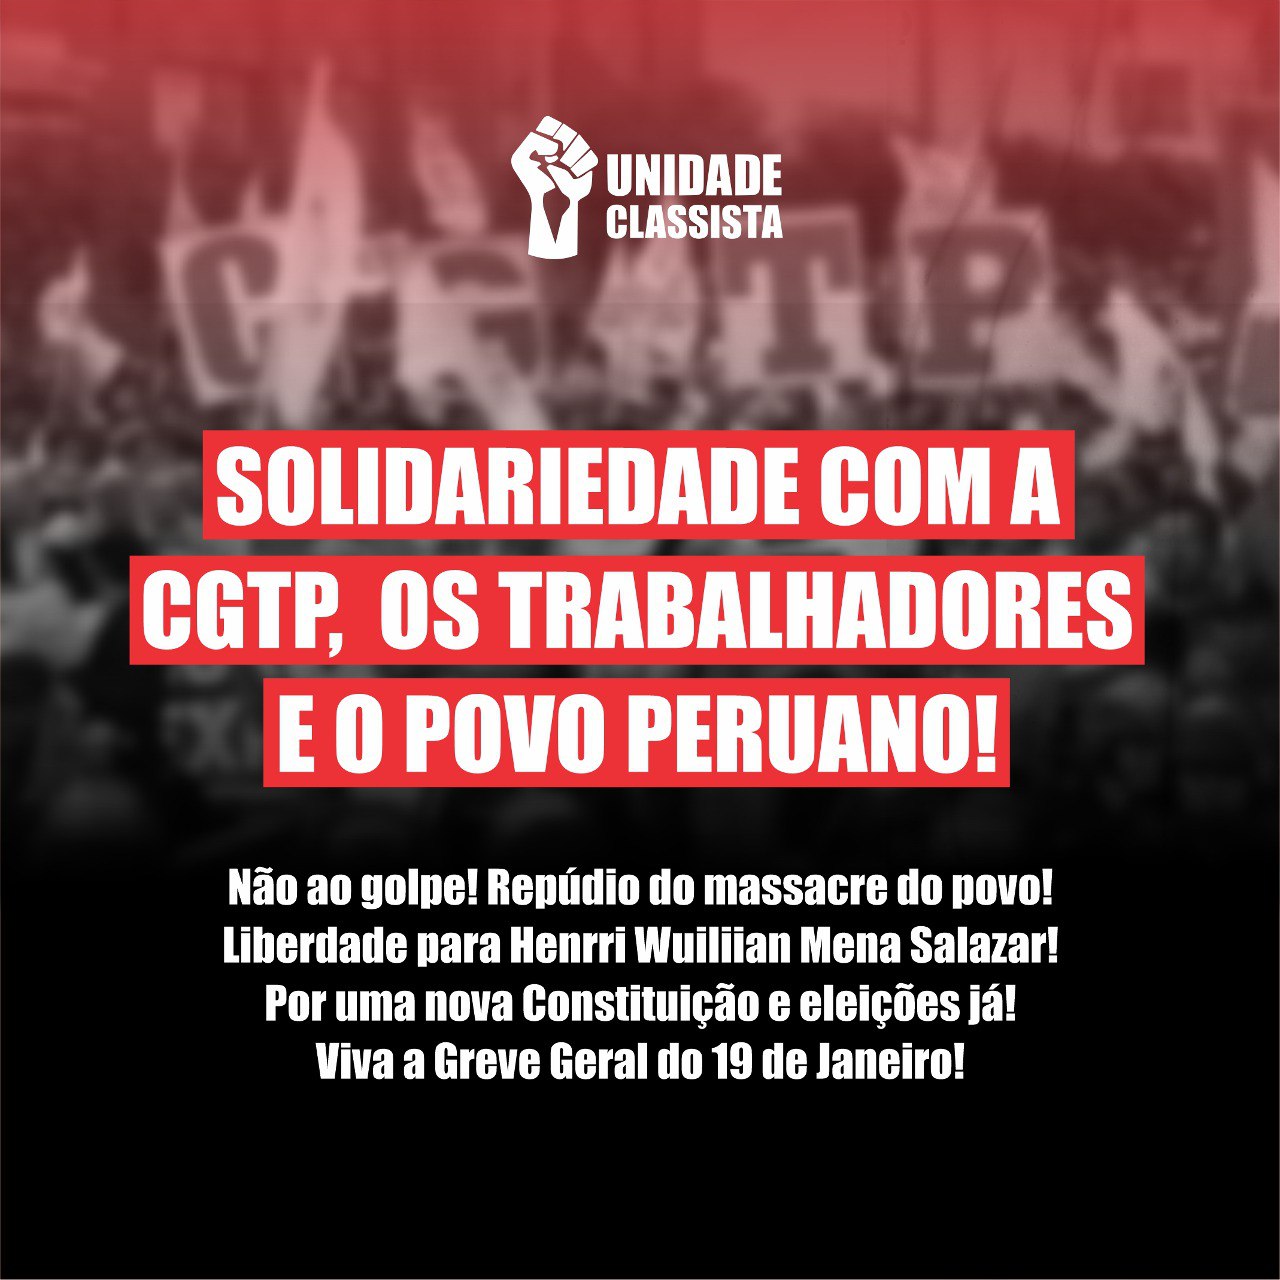 SOLIDARIEDADE COM A CGTP, OS TRABALHADORES E O POVO PERUANO!